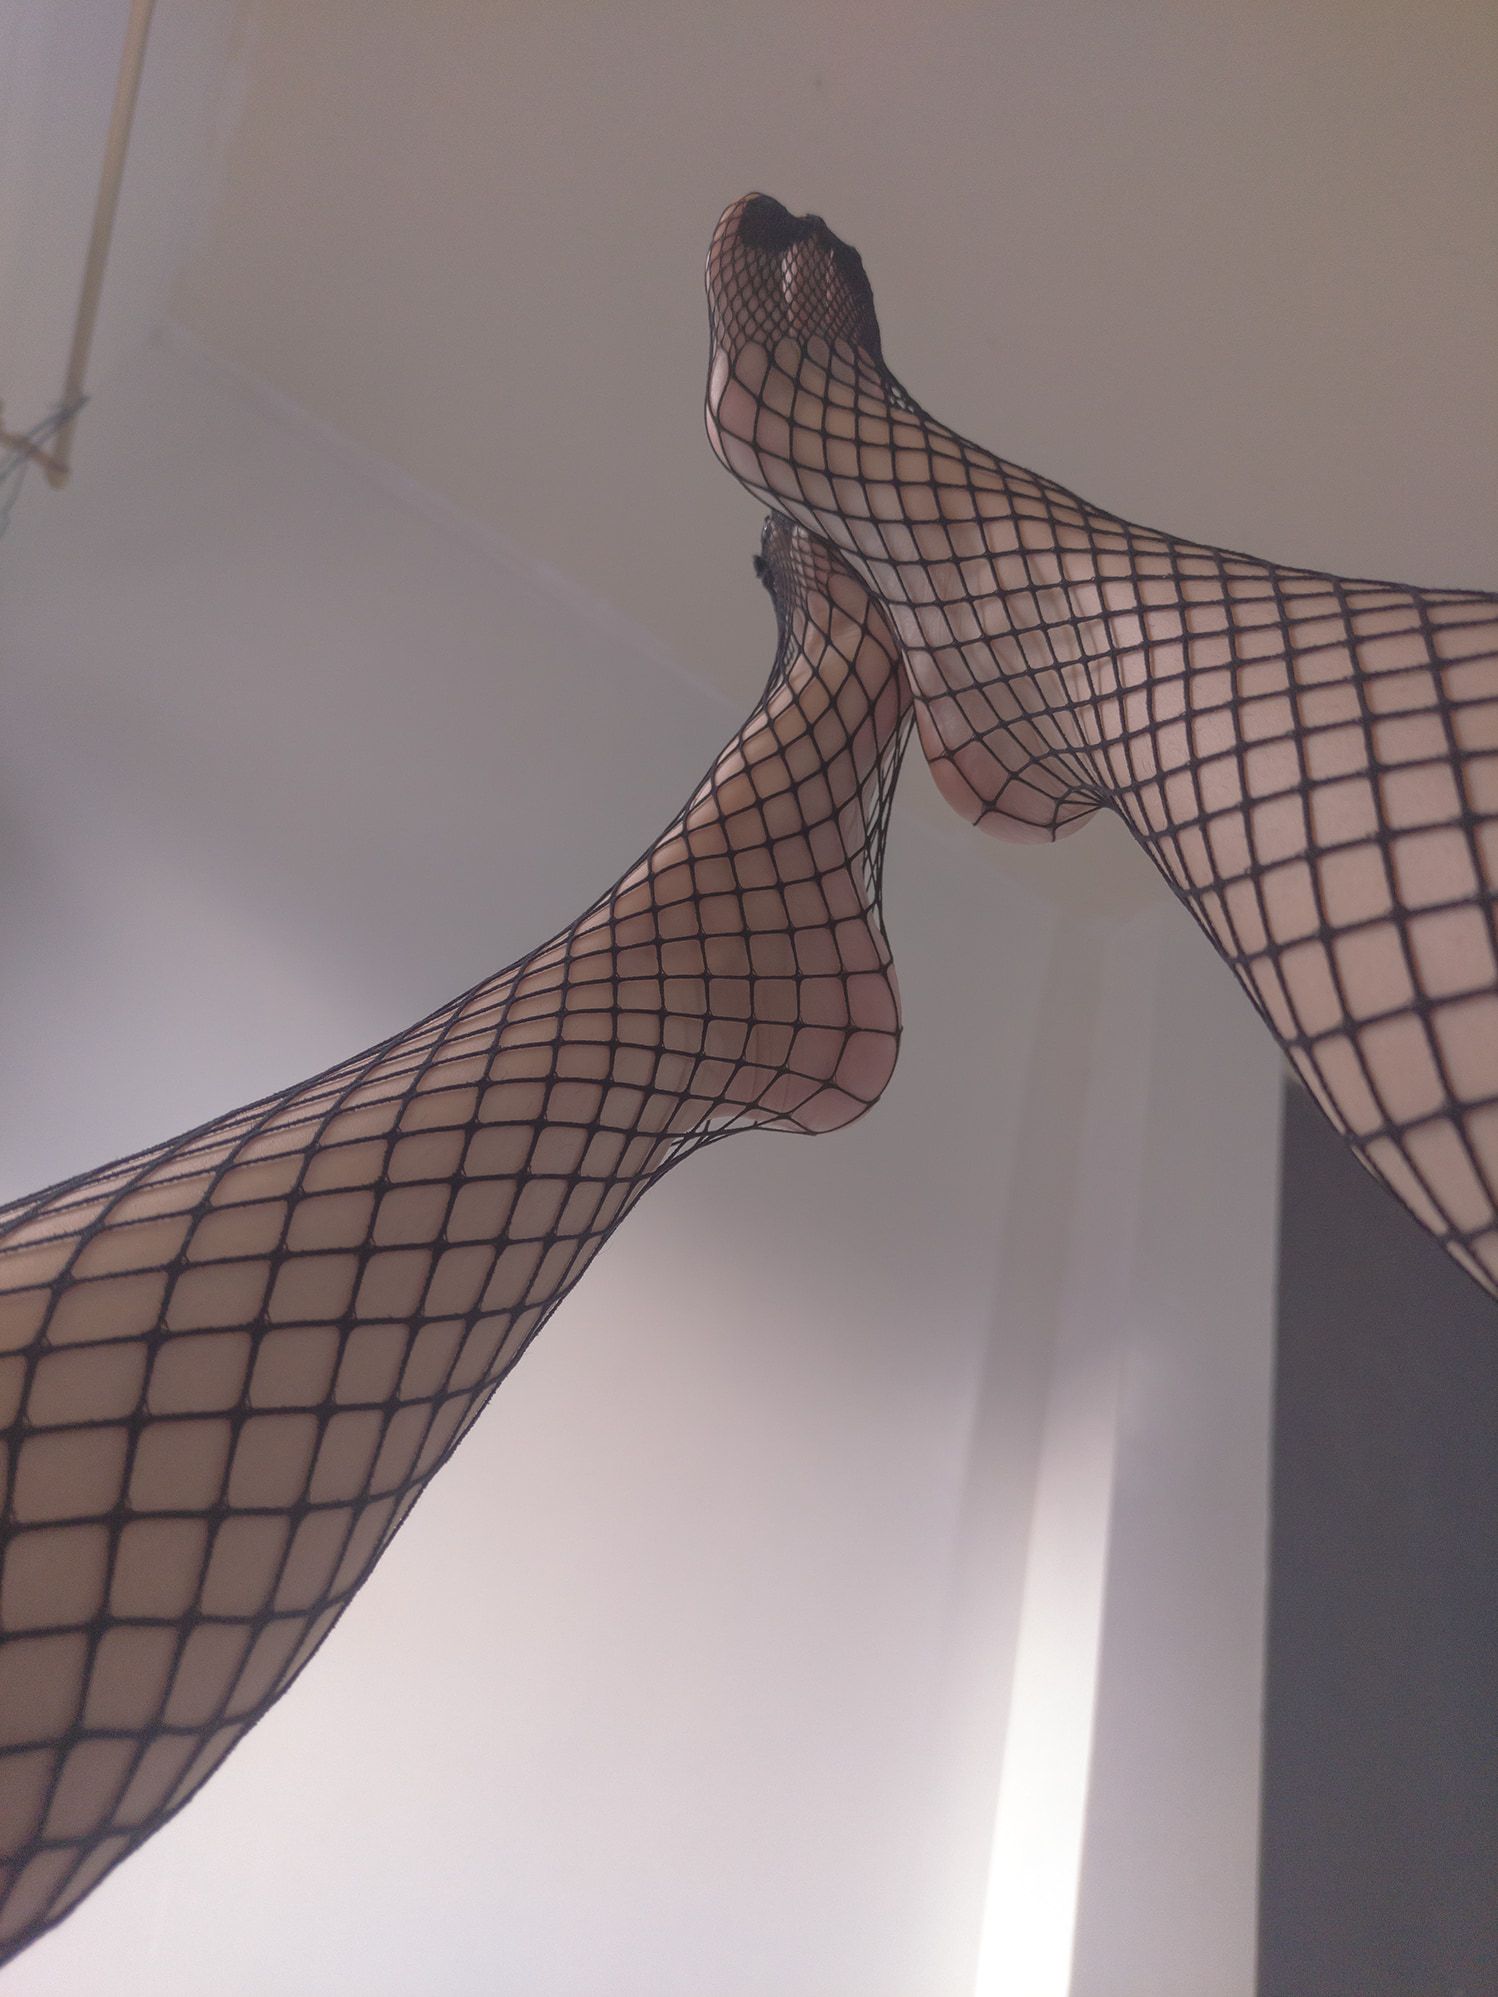 Feet fetish, fishnet stockings #3